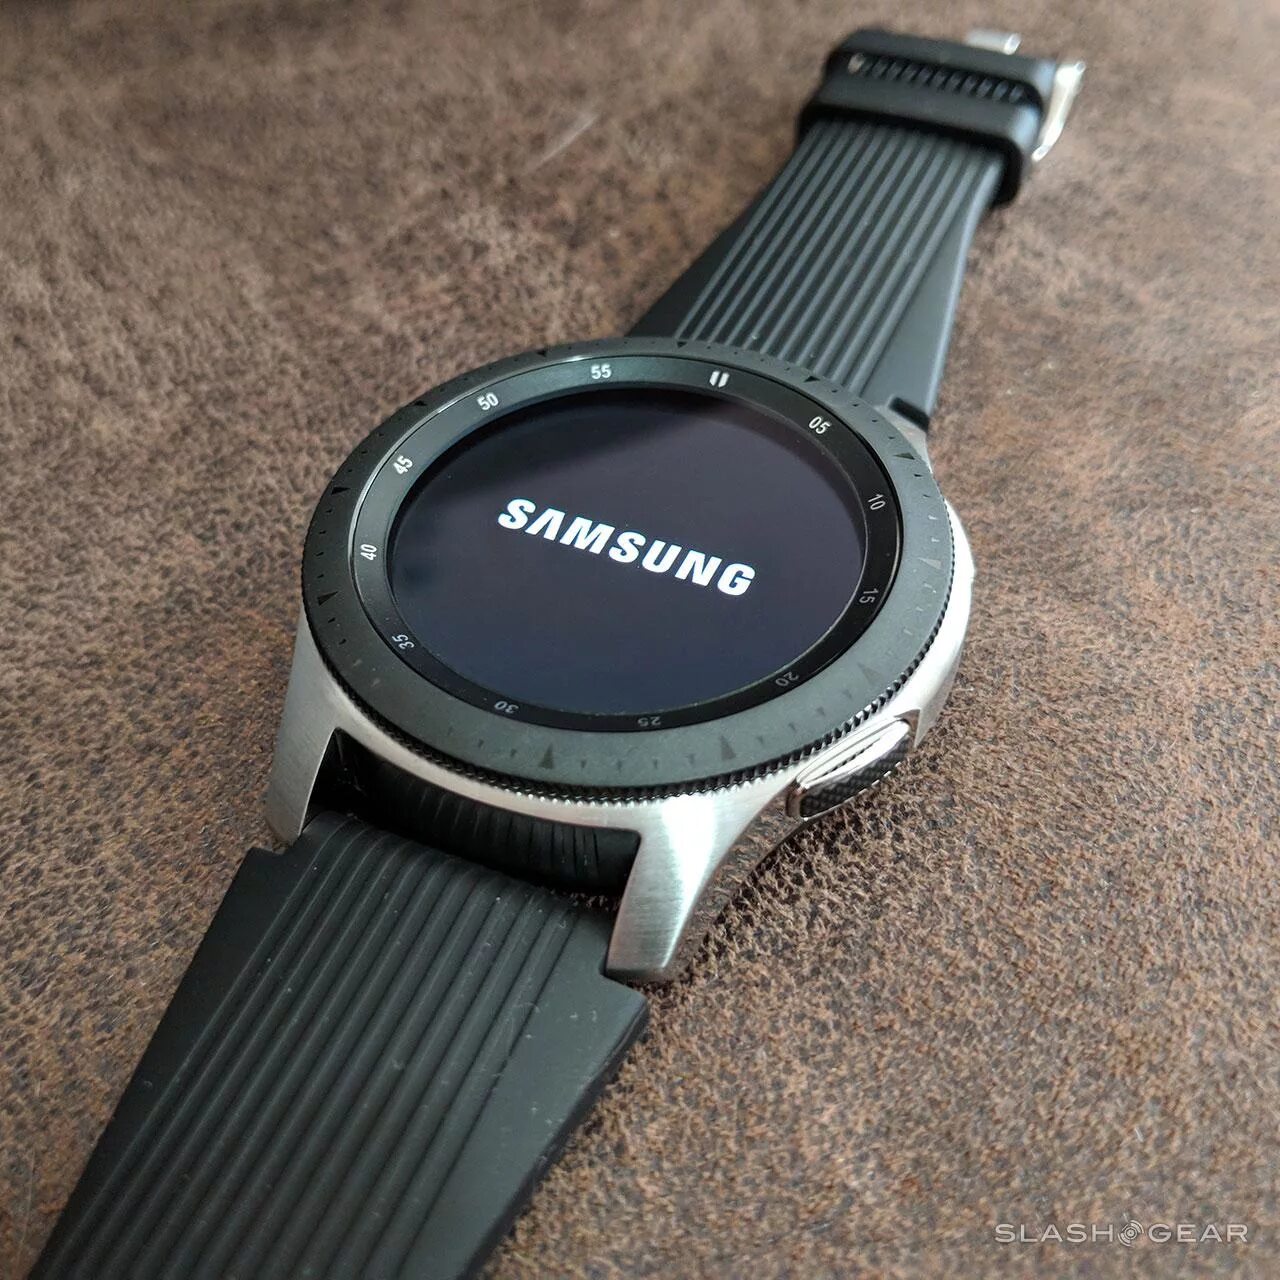 Samsung Galaxy watch SM-r800. Samsung Galaxy watch 46mm SM-r800 Silver. Samsung Galaxy watch 46mm Silver r800. Samsung galaxy watch r800